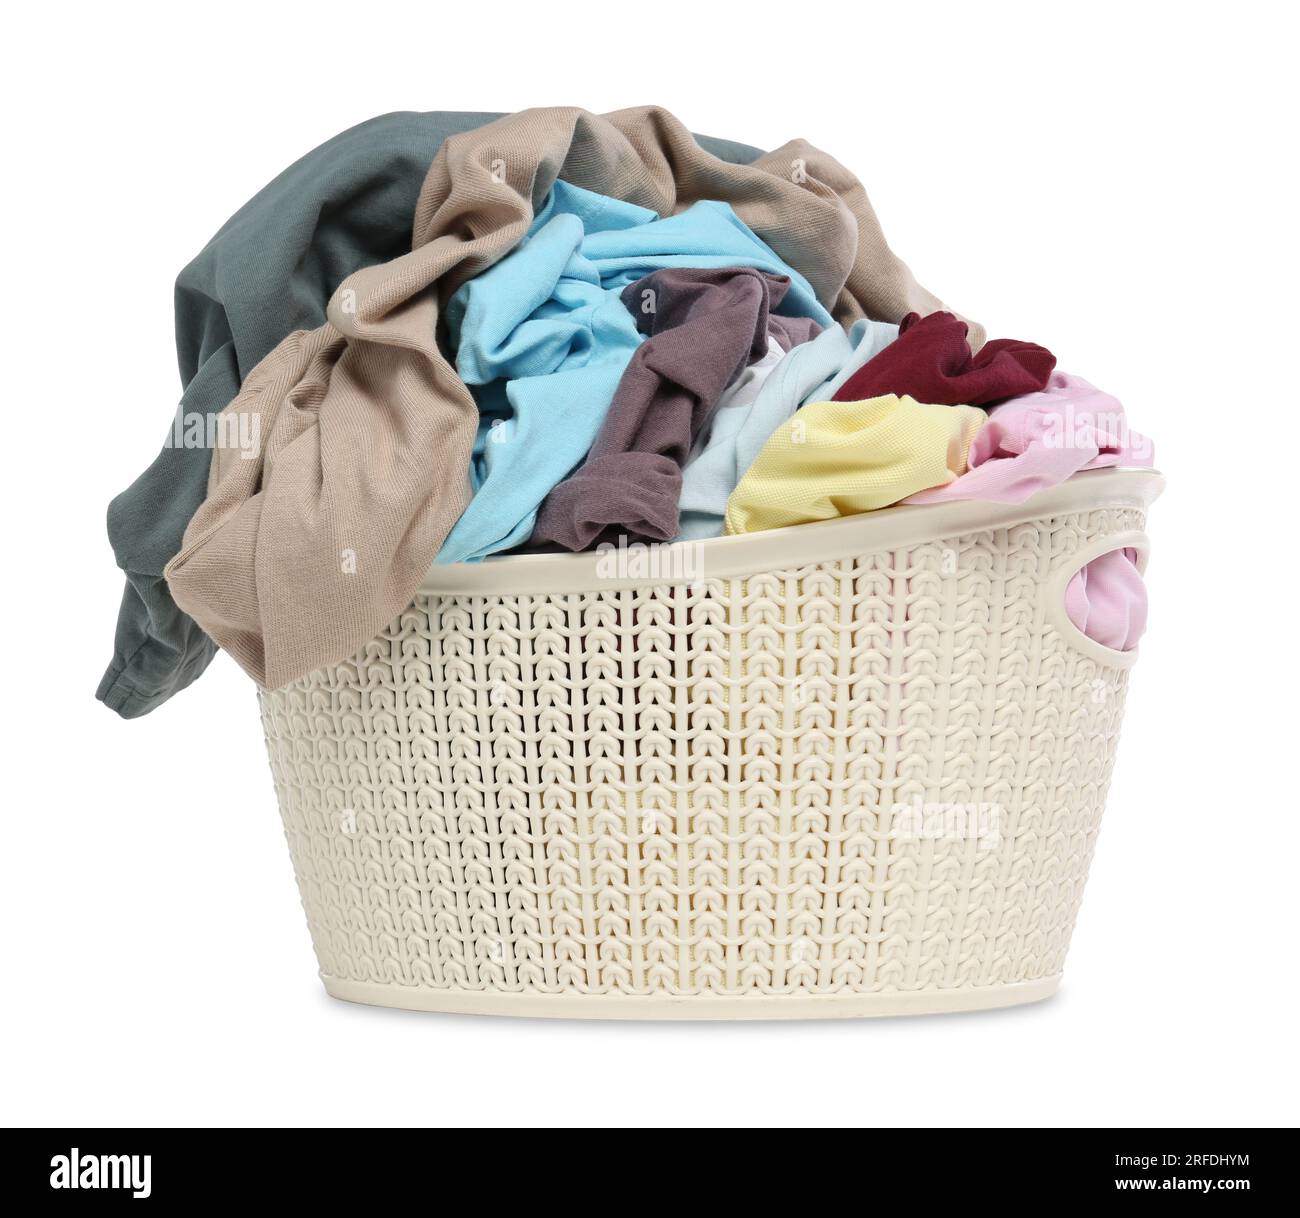 https://c8.alamy.com/compes/2rfdhym/cesta-de-lavanderia-con-ropa-limpia-y-colorida-aislada-en-blanco-2rfdhym.jpg